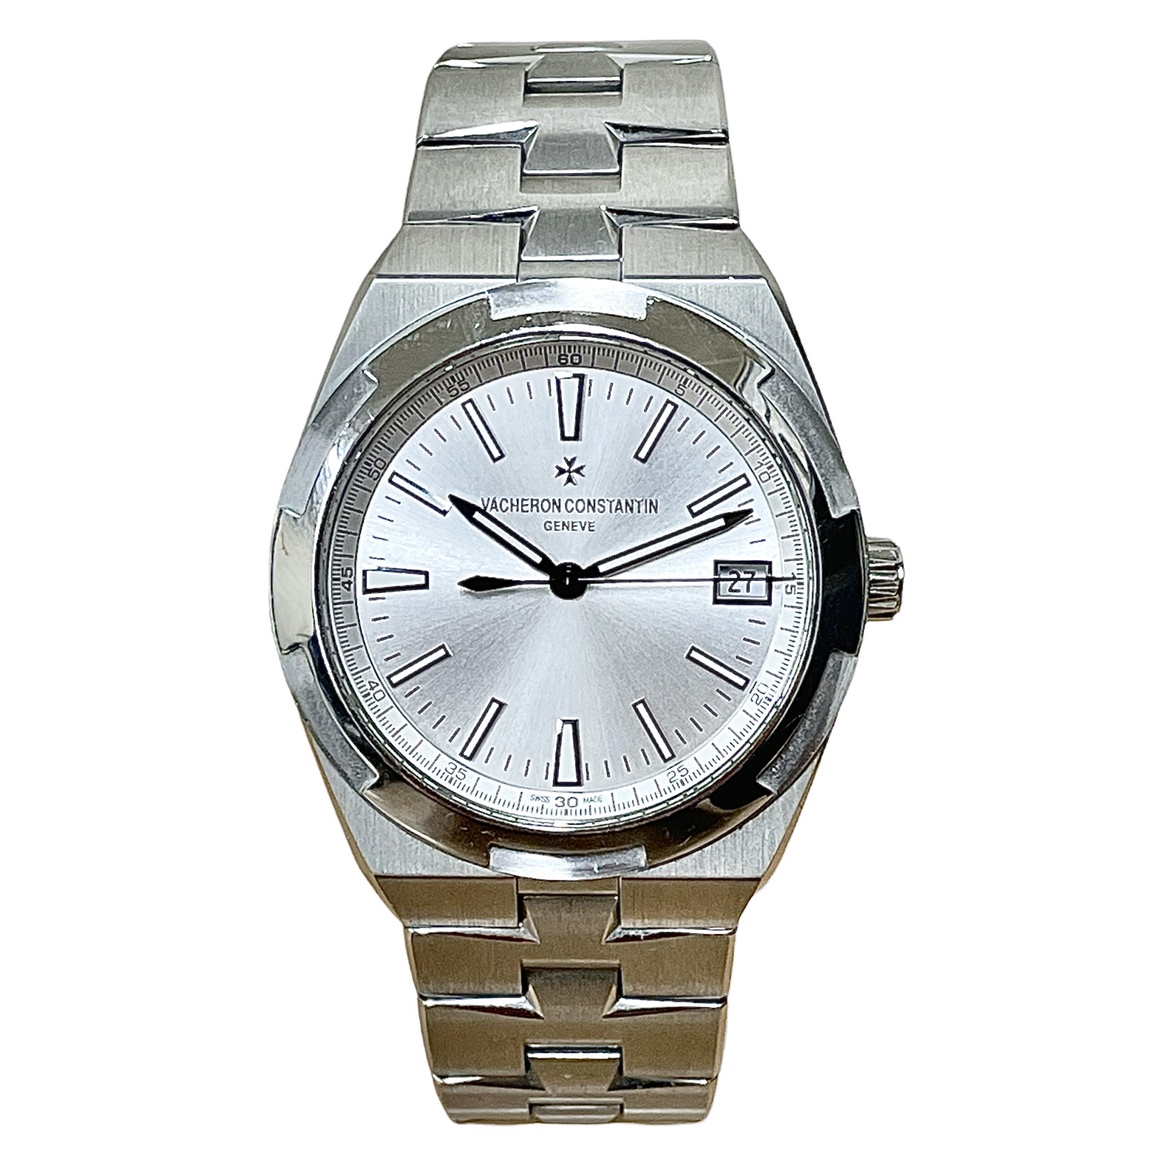 ヴァシュロンコンスタンタンのSS 白文字盤 4500V/110A-B126 オーヴァーシーズ 自動巻き時計の買取実績です。